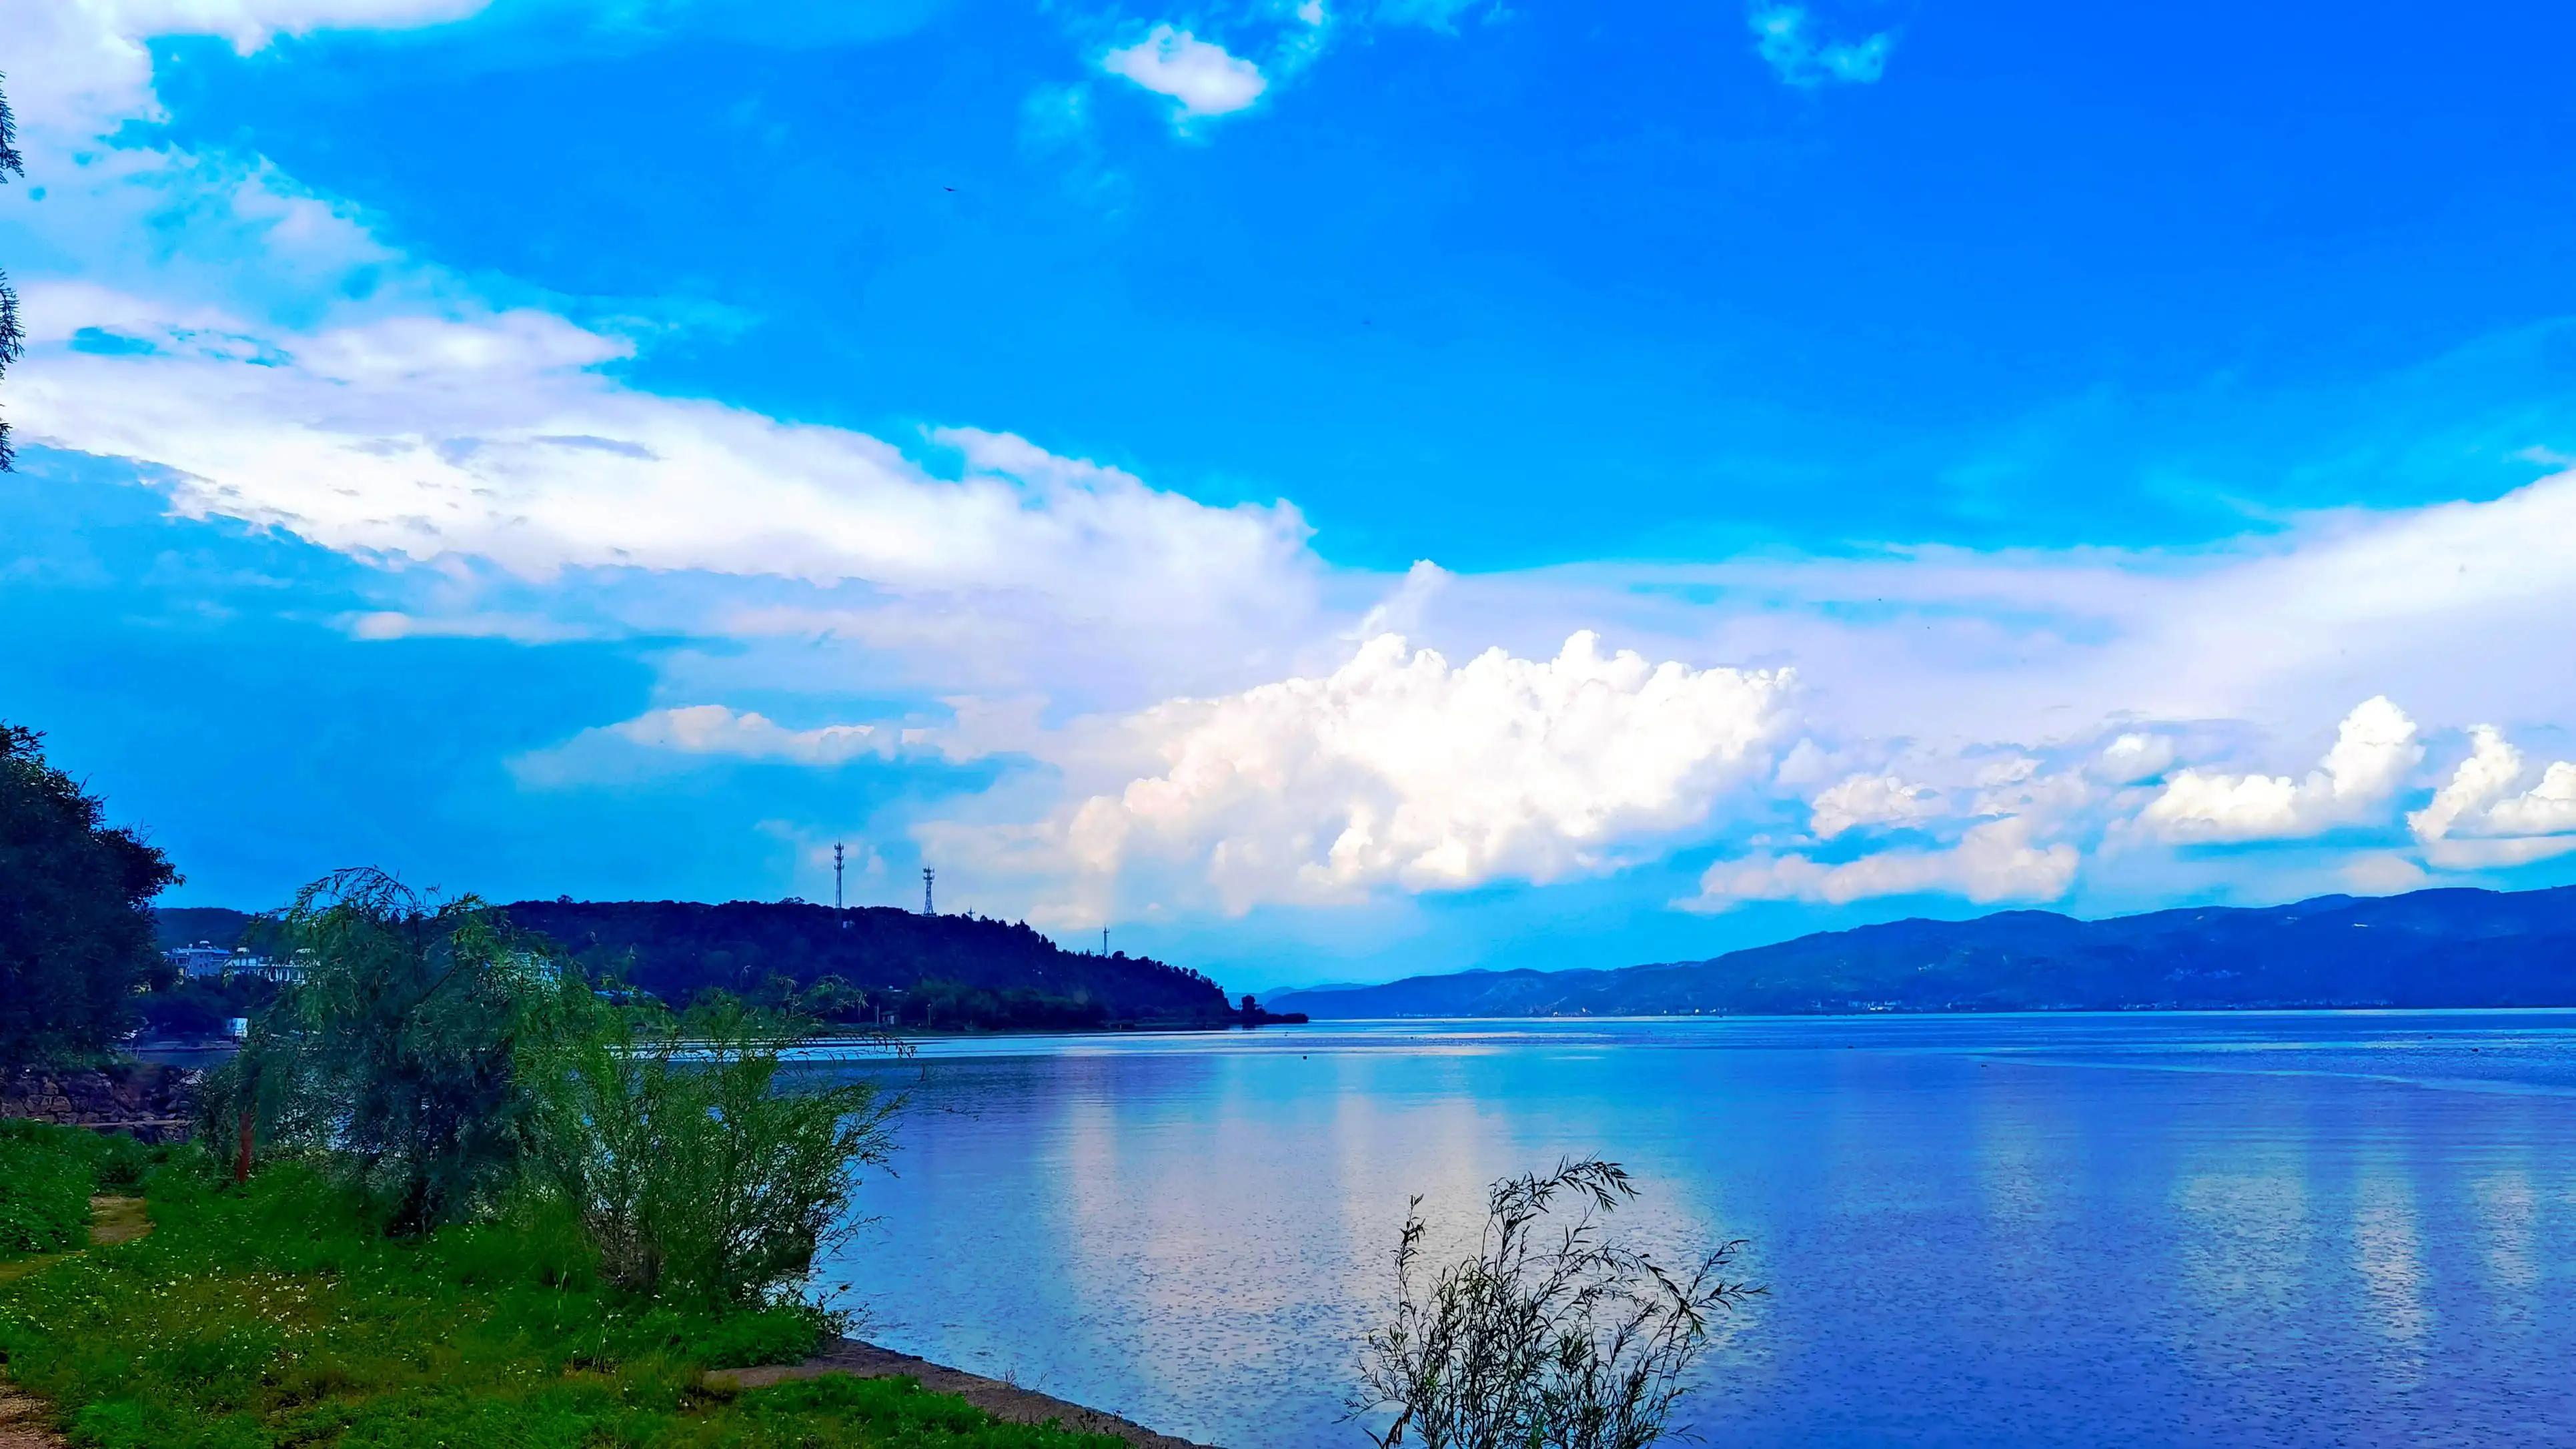 《夏之蓝》抚仙湖美景